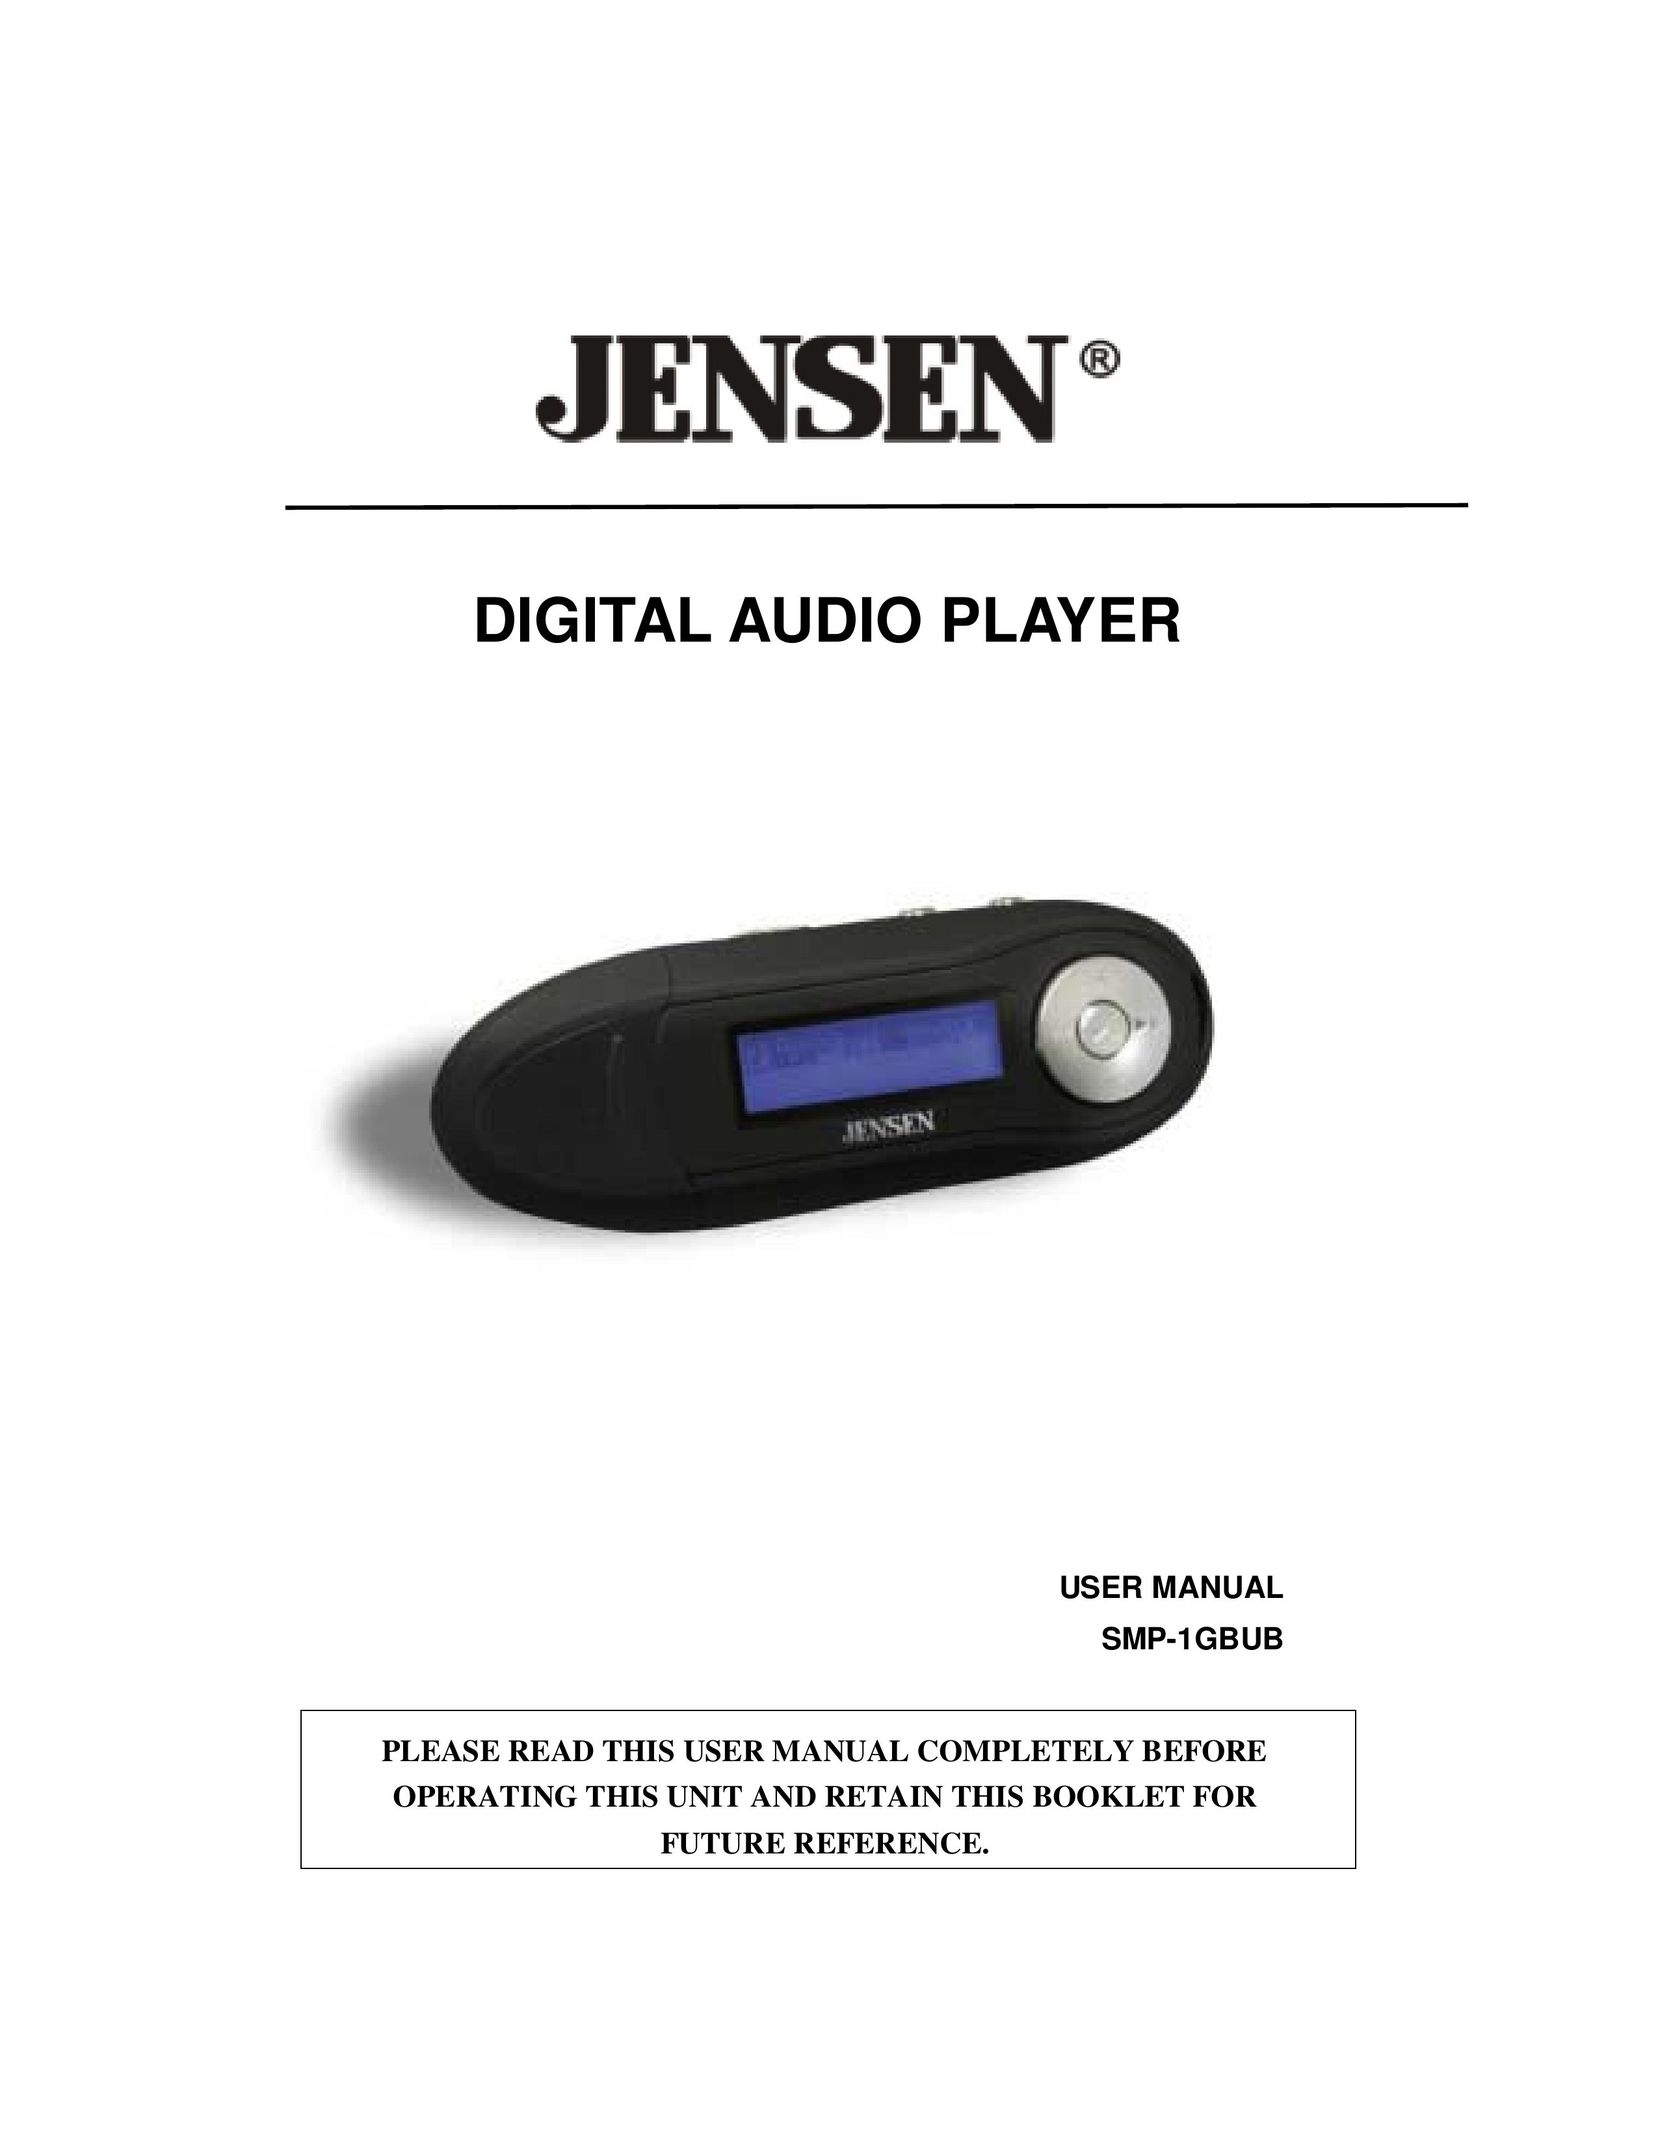 Jensen SMP-xGBUB MP3 Player User Manual